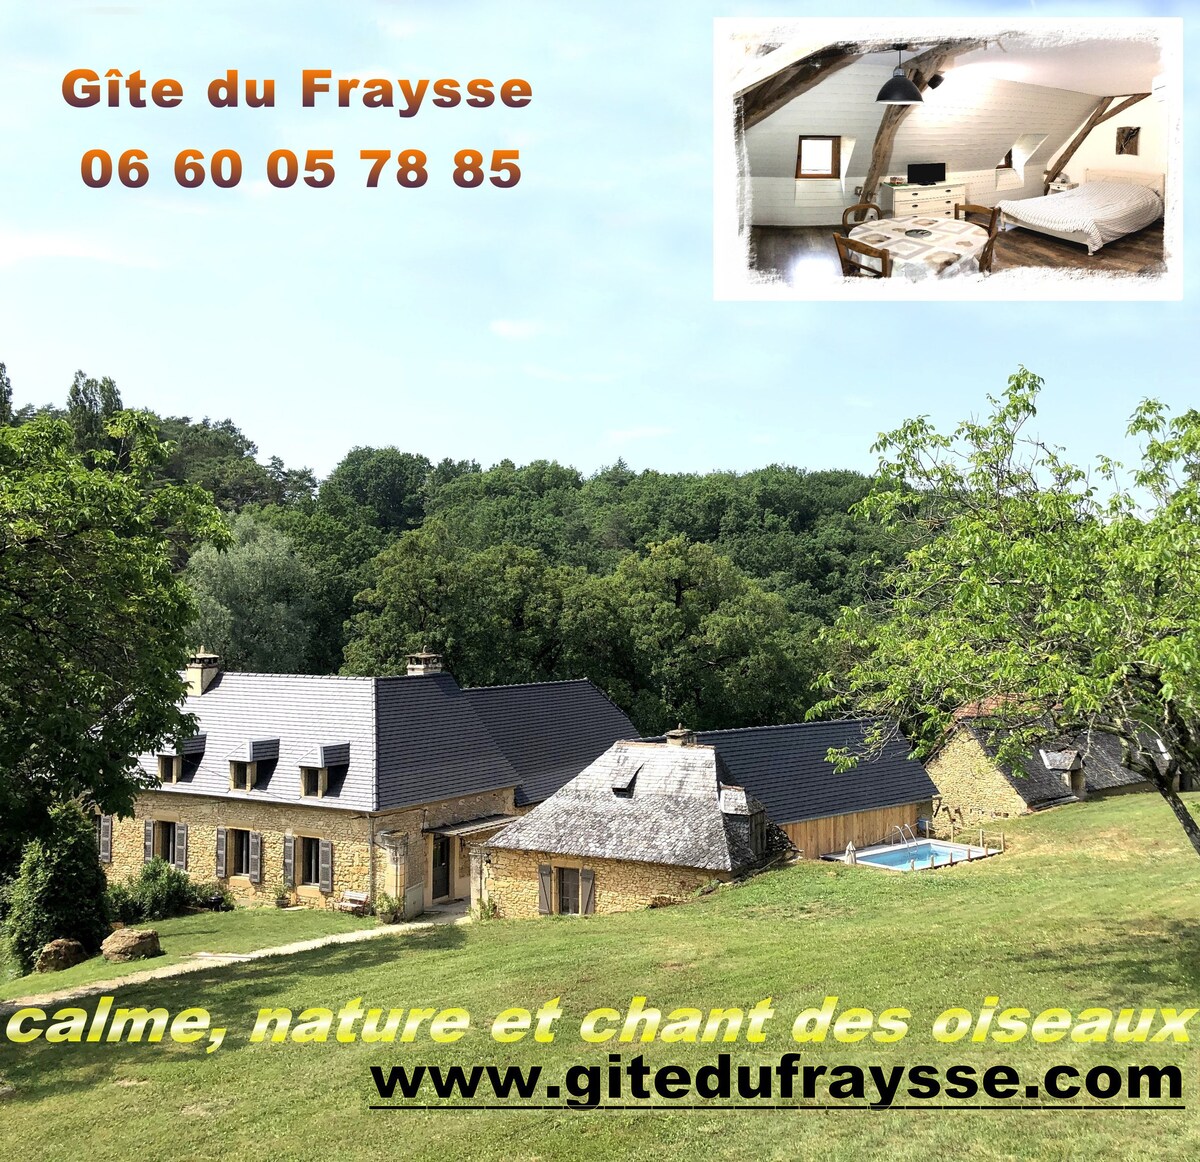 4P乡村小屋- Gîte du Fraysse -鸟天堂